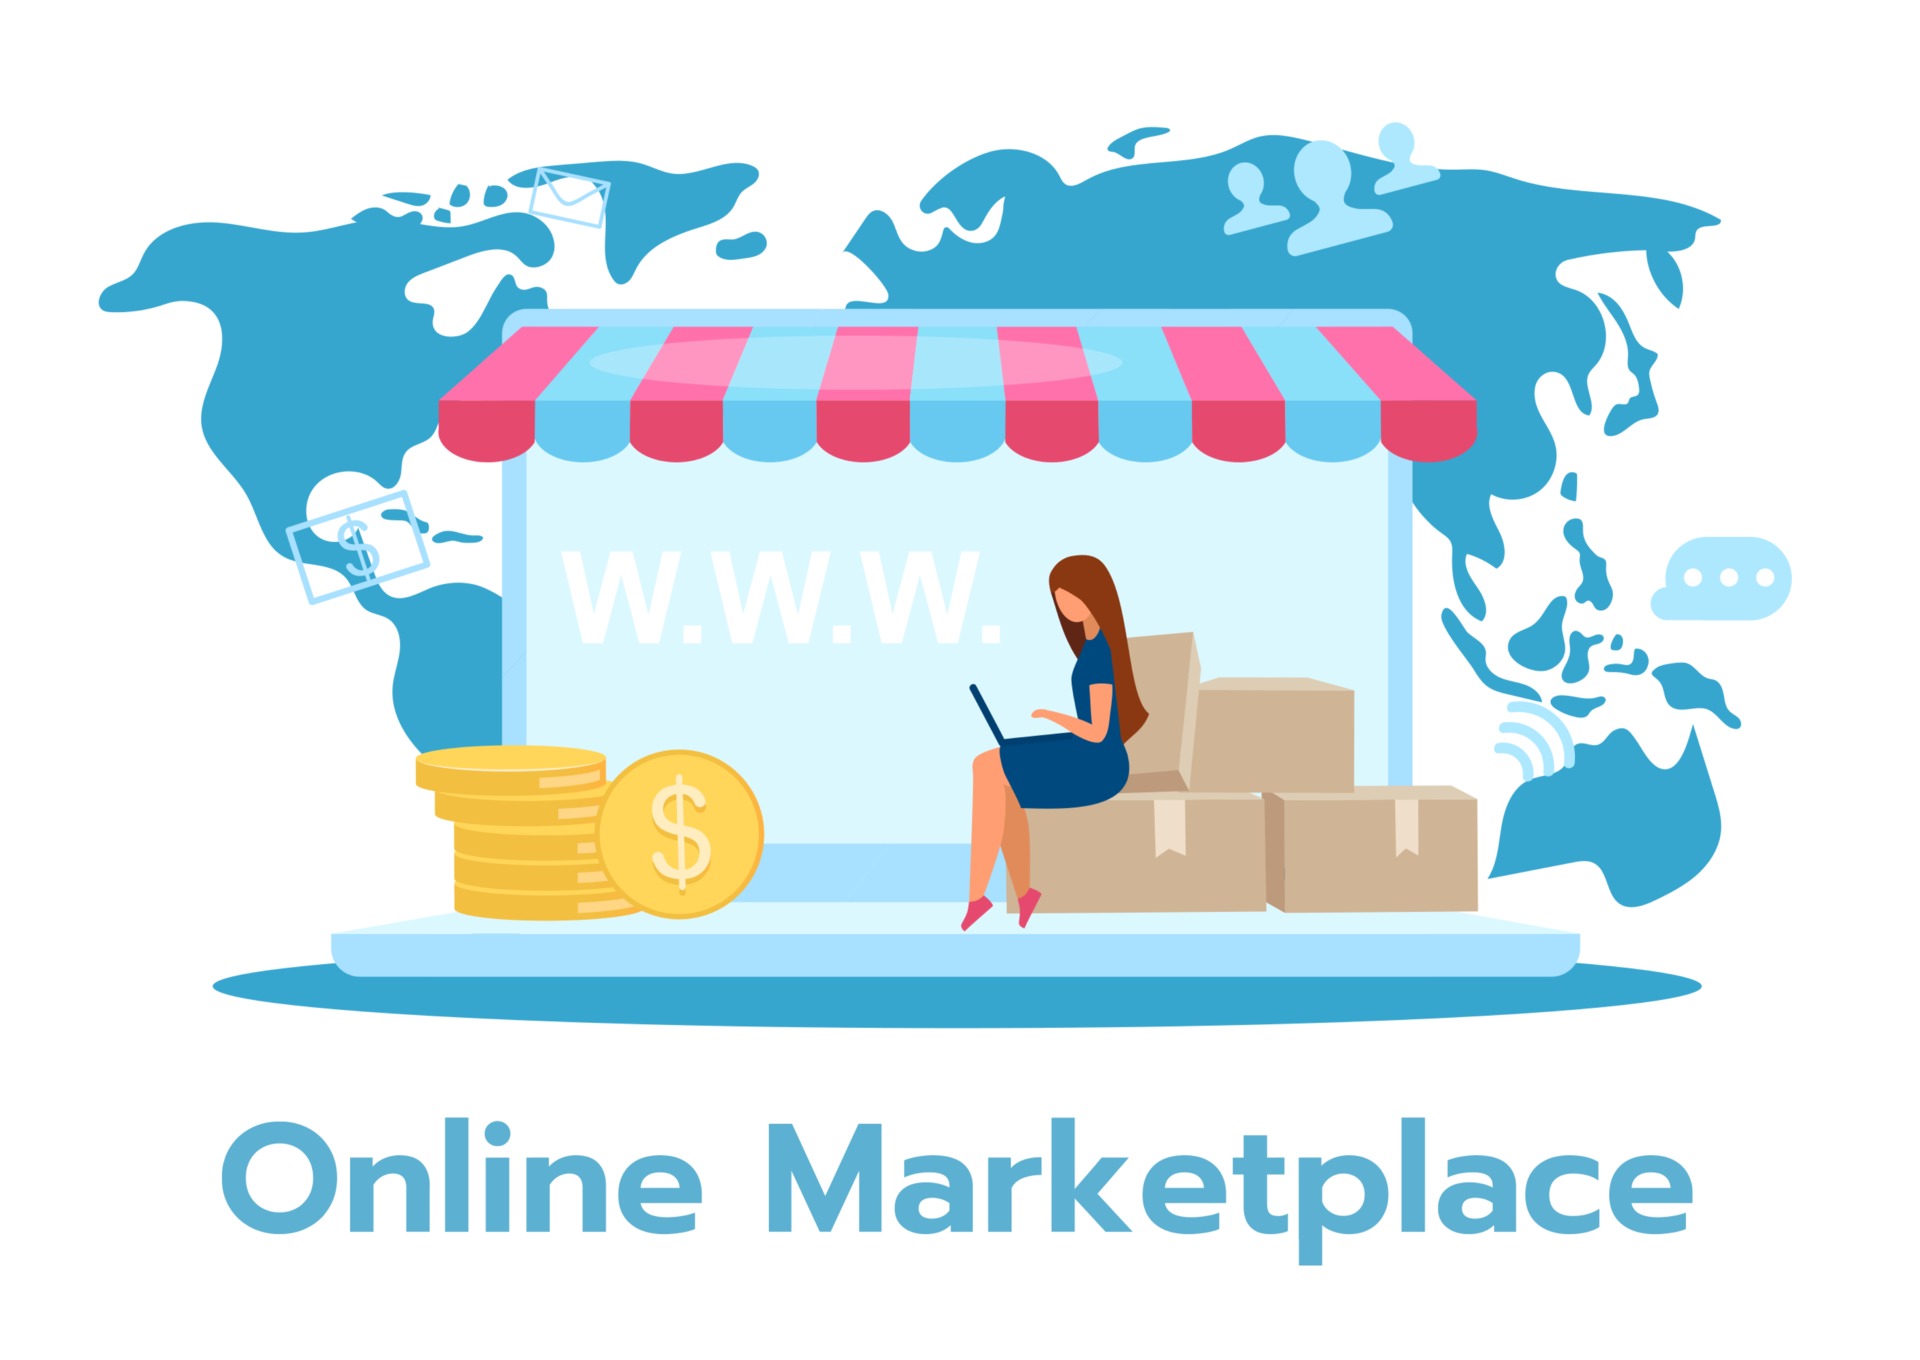 ecommerce online marketplace